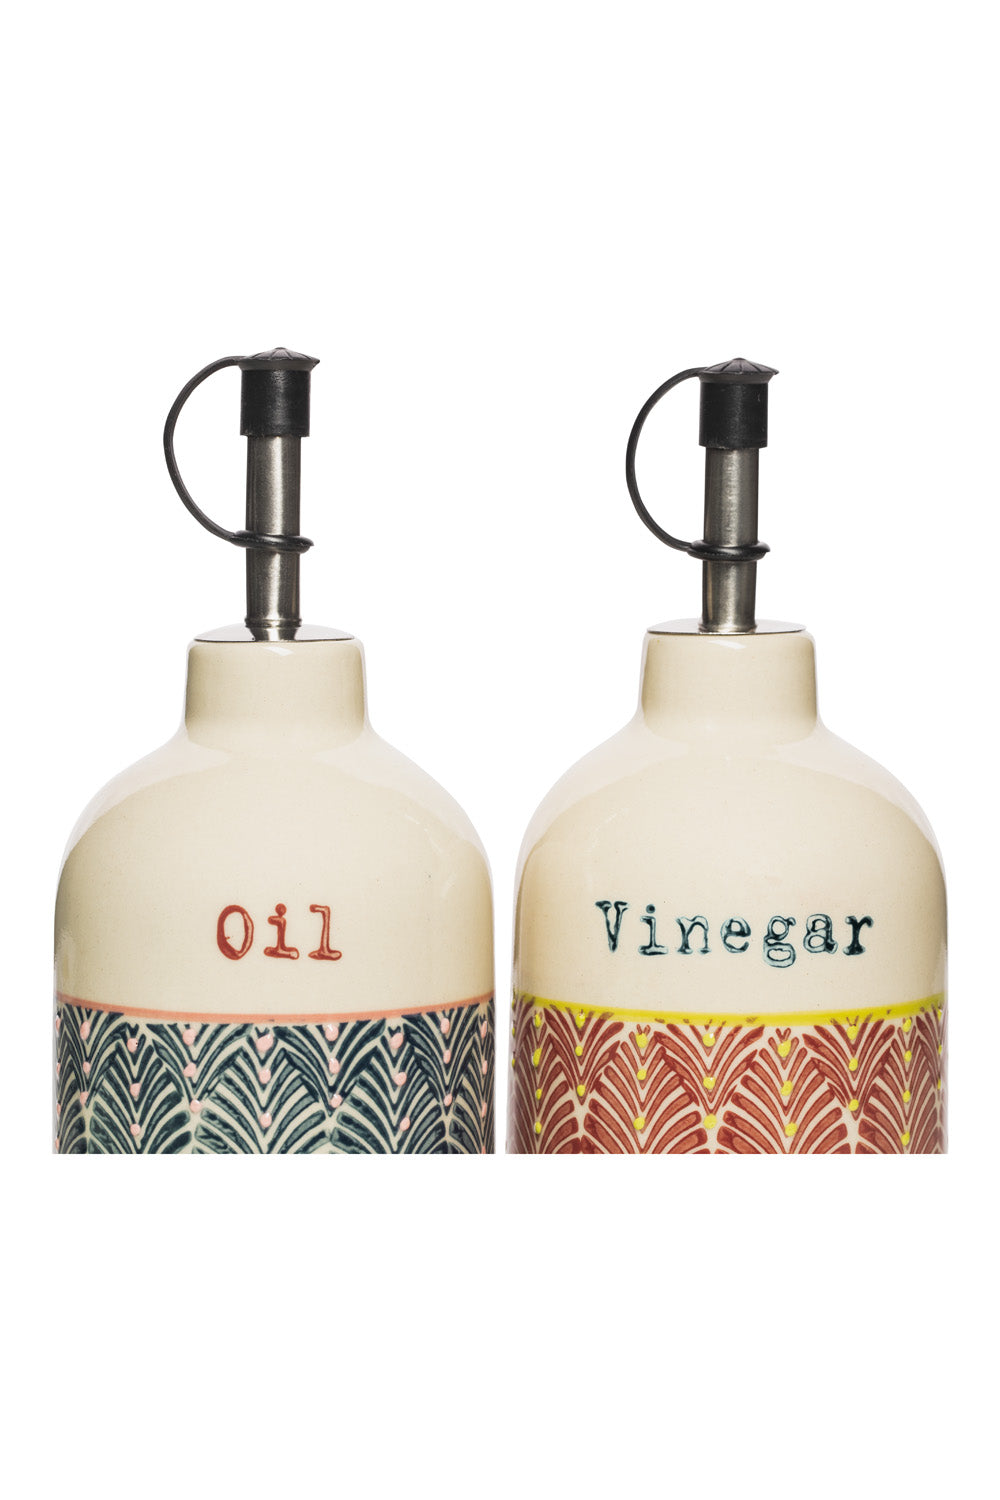 Vinegar & Oil Bottle in Red & Blue